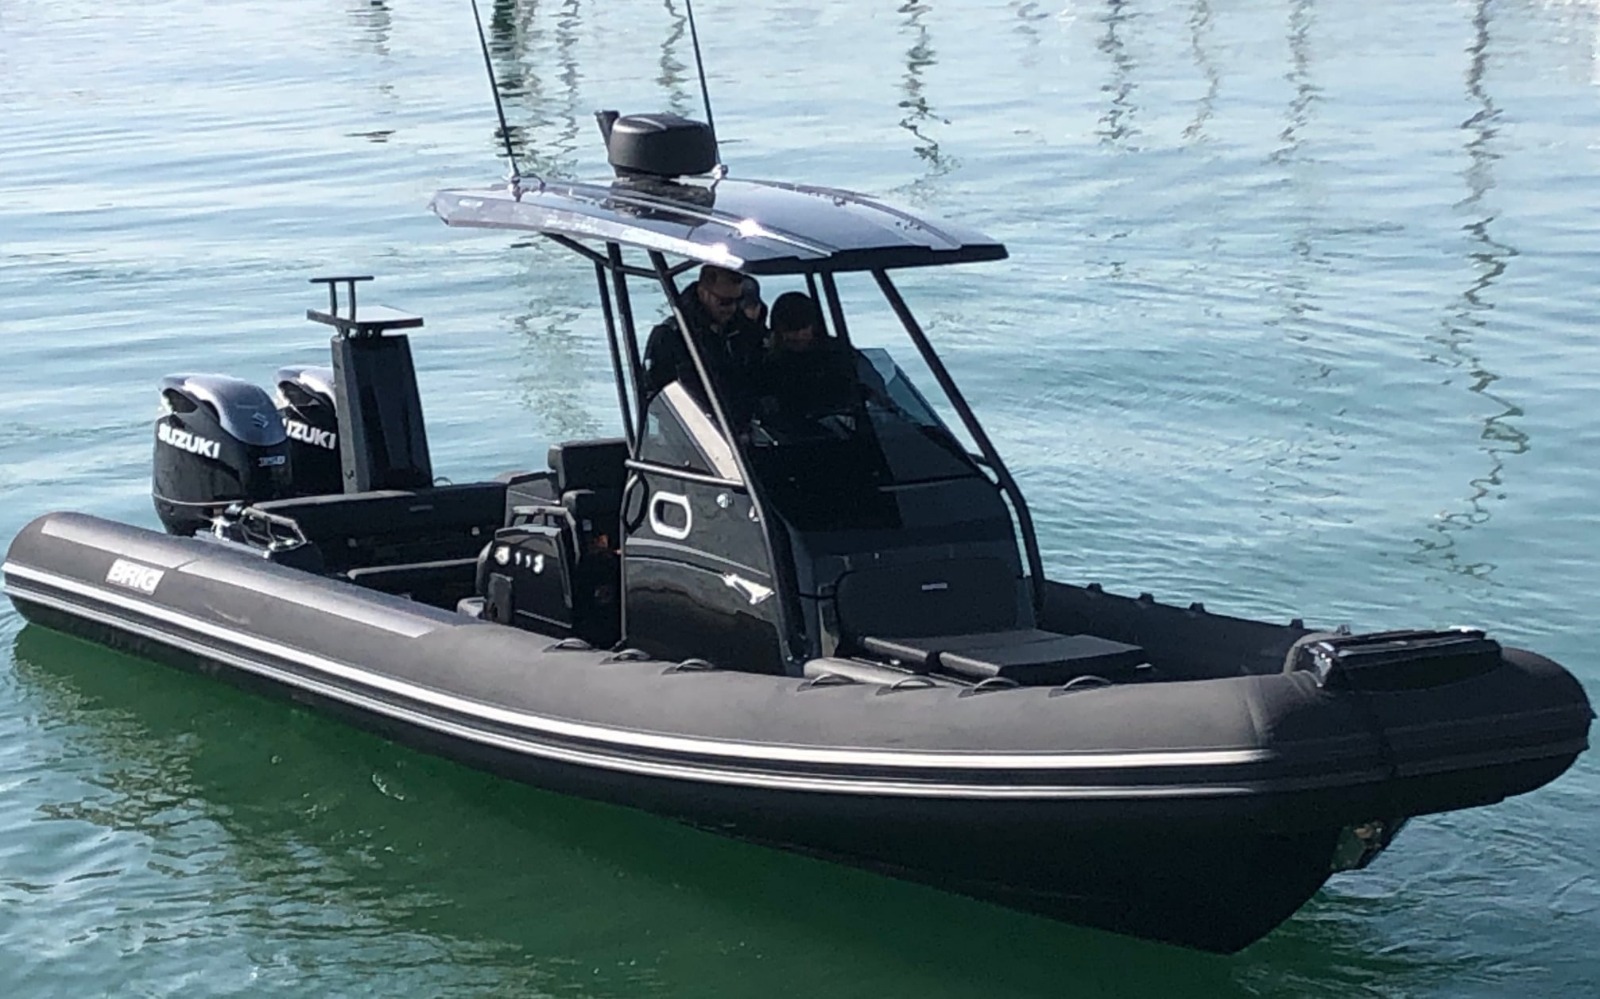 2020 New Design 500 Cm Inflatable Rib Boat Fishing Boat Luxury Rib